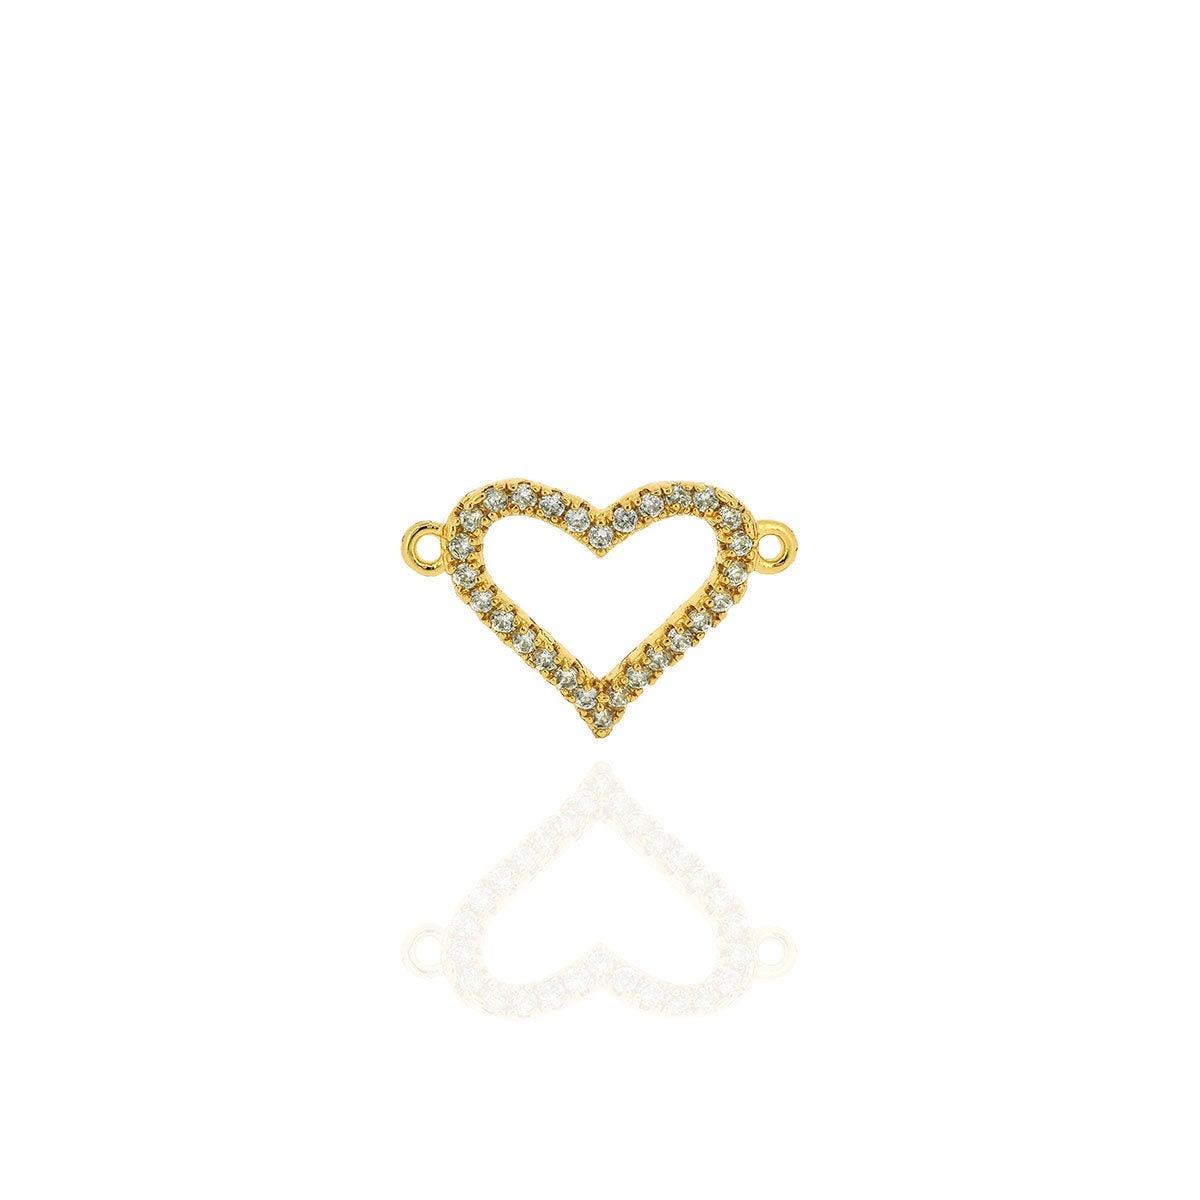 Zirconia heart links Heart-shaped bracelet necklace tiny | Etsy